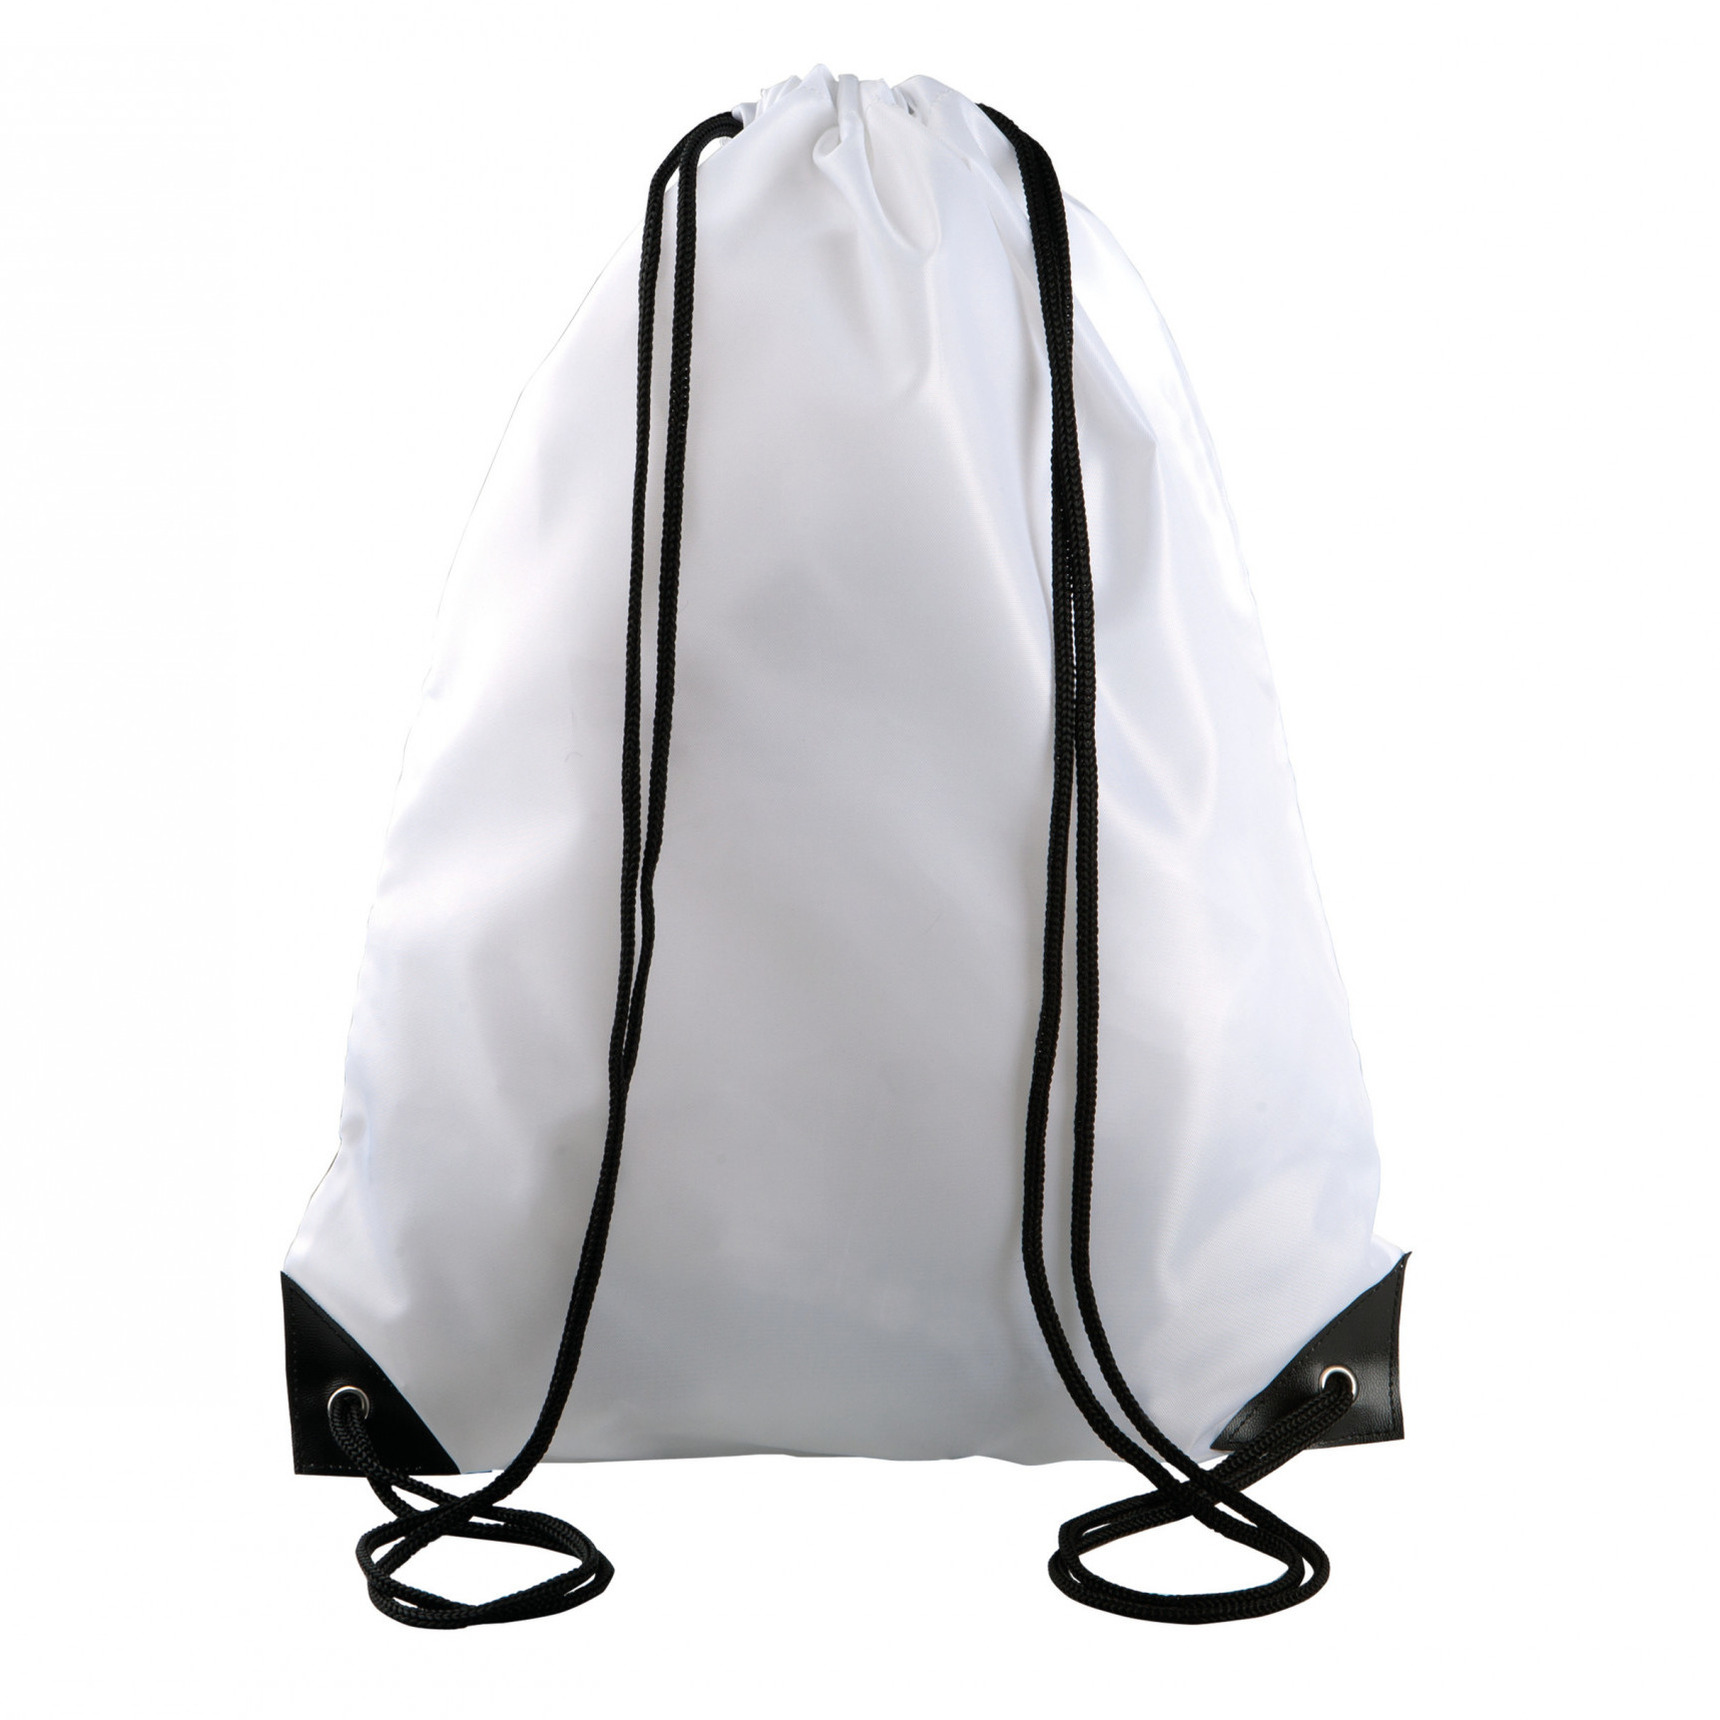 Sport gymtas-draagtas wit met rijgkoord 34 x 44 cm van polyester